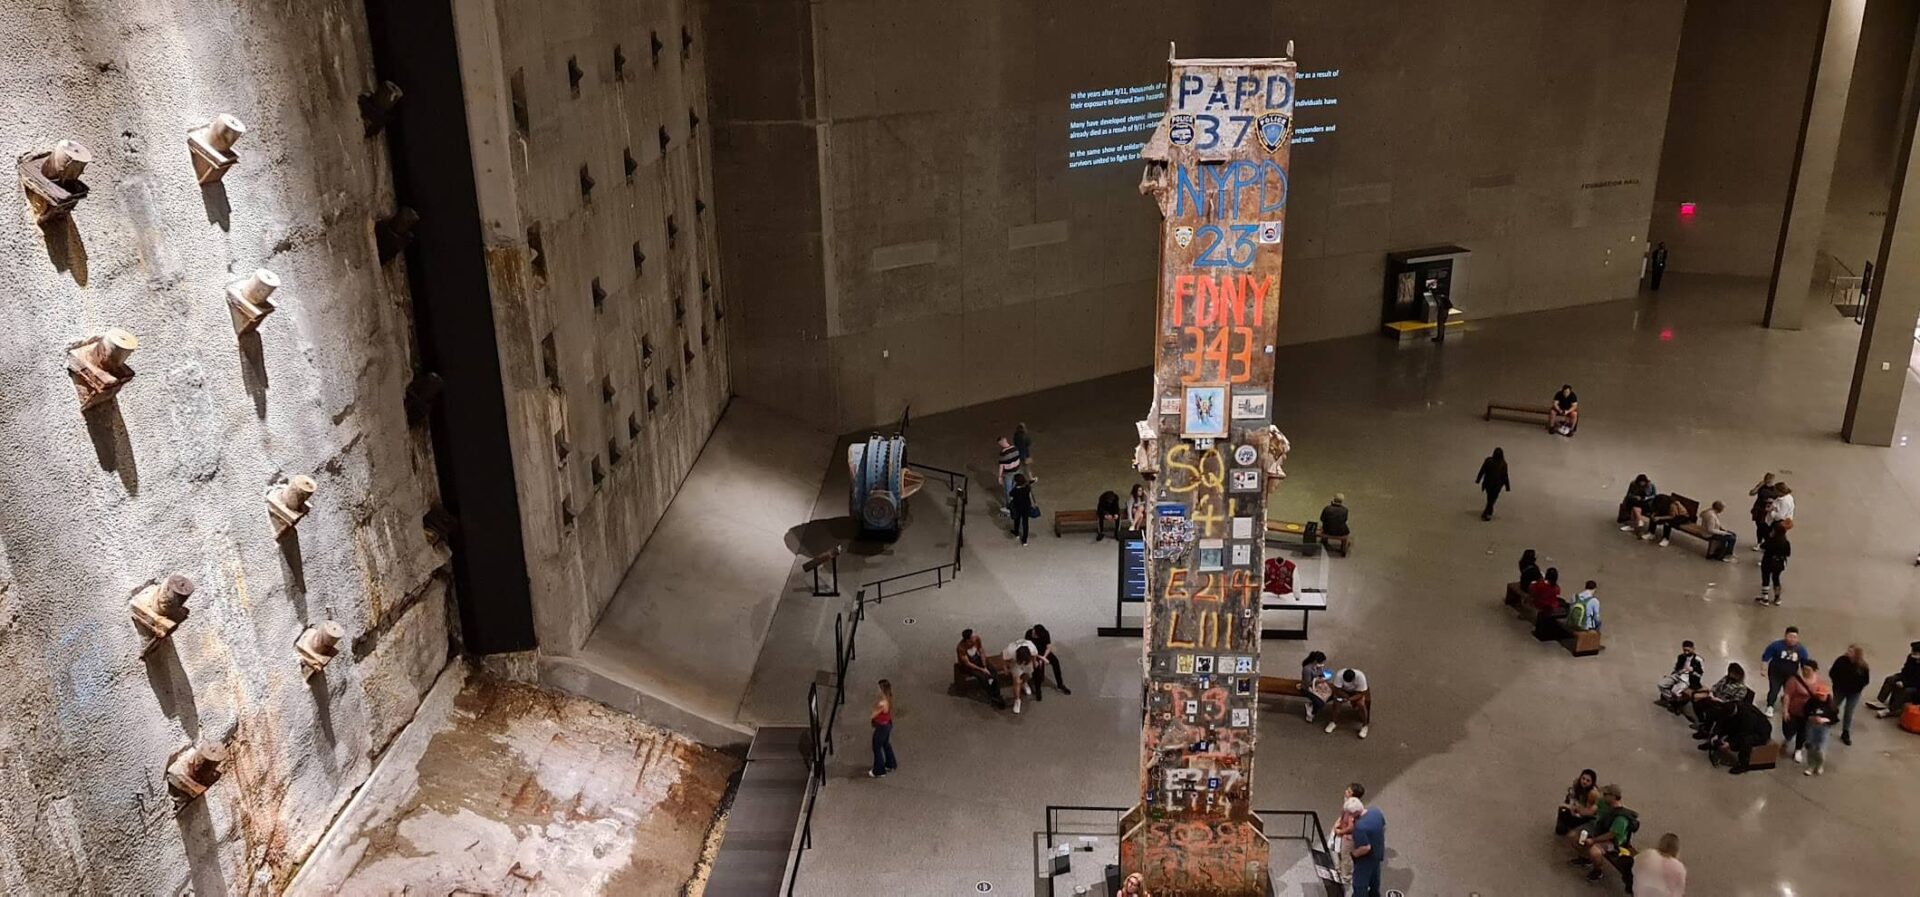 museu e memorial 11 de setembro em nova york - vale a visita na primeira vez